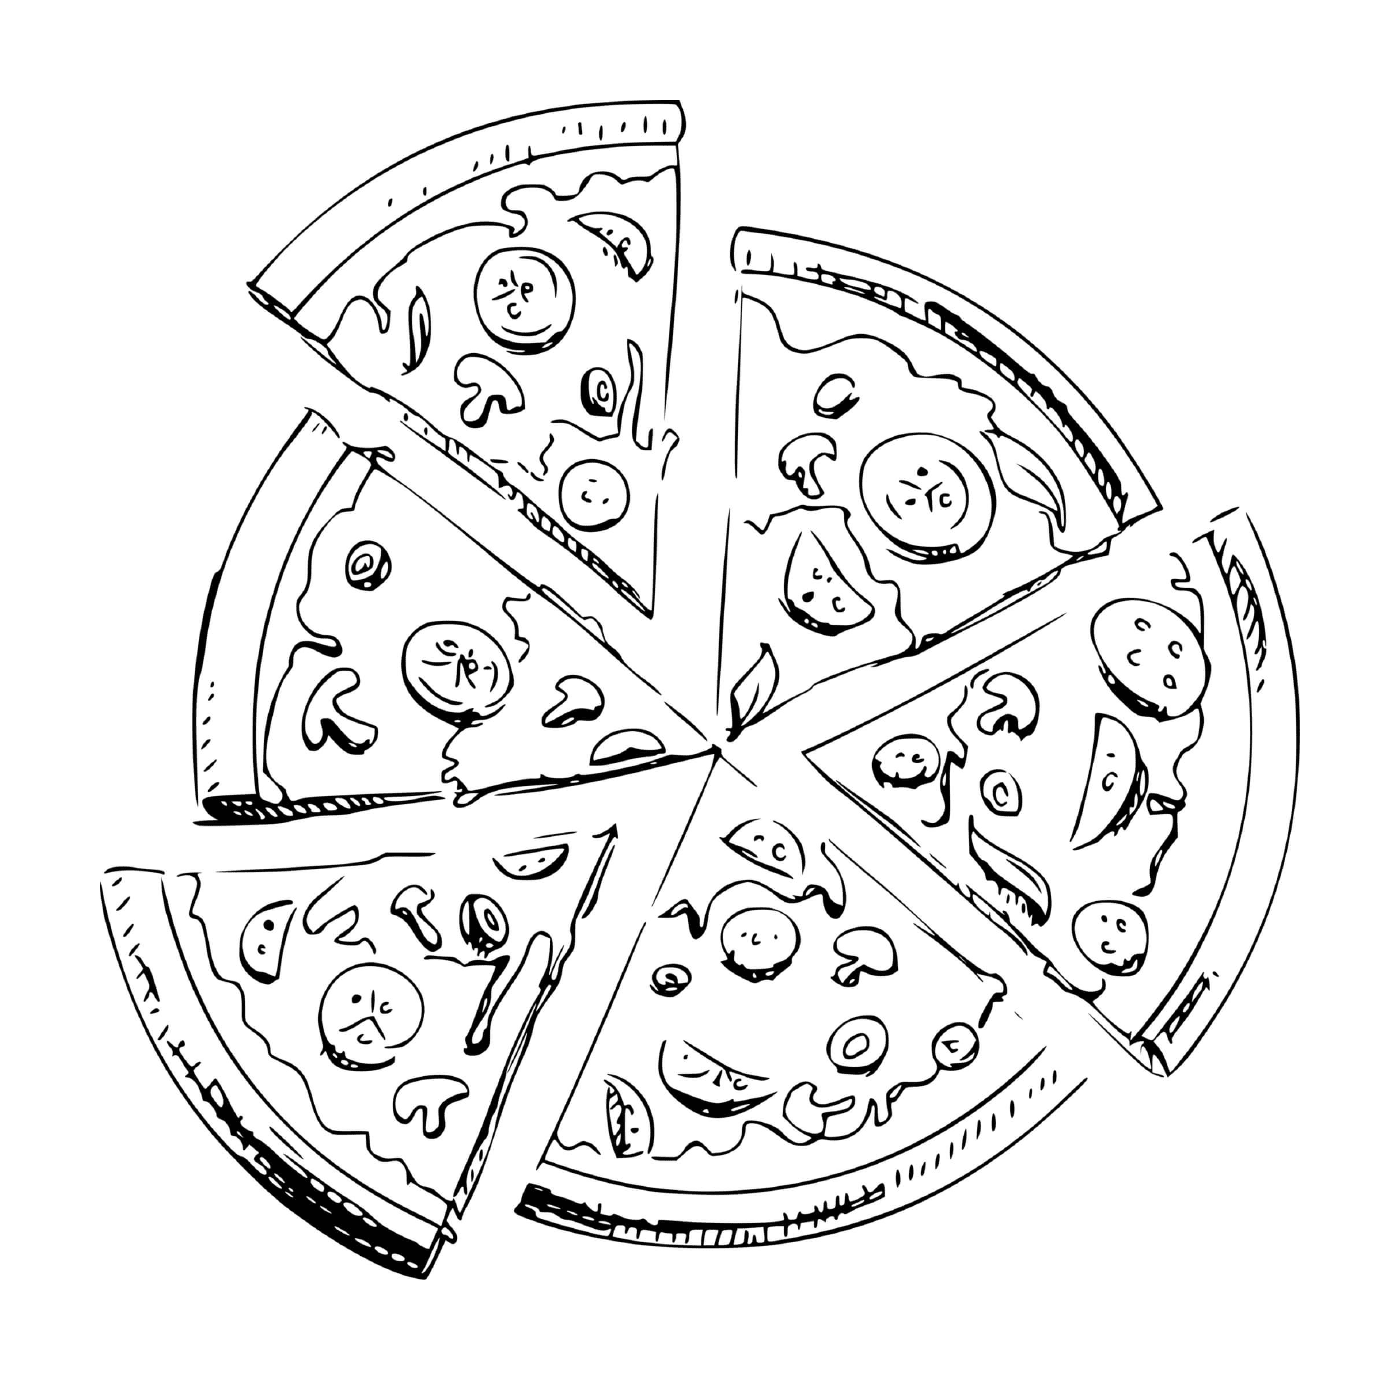  Seis piezas de pizza 